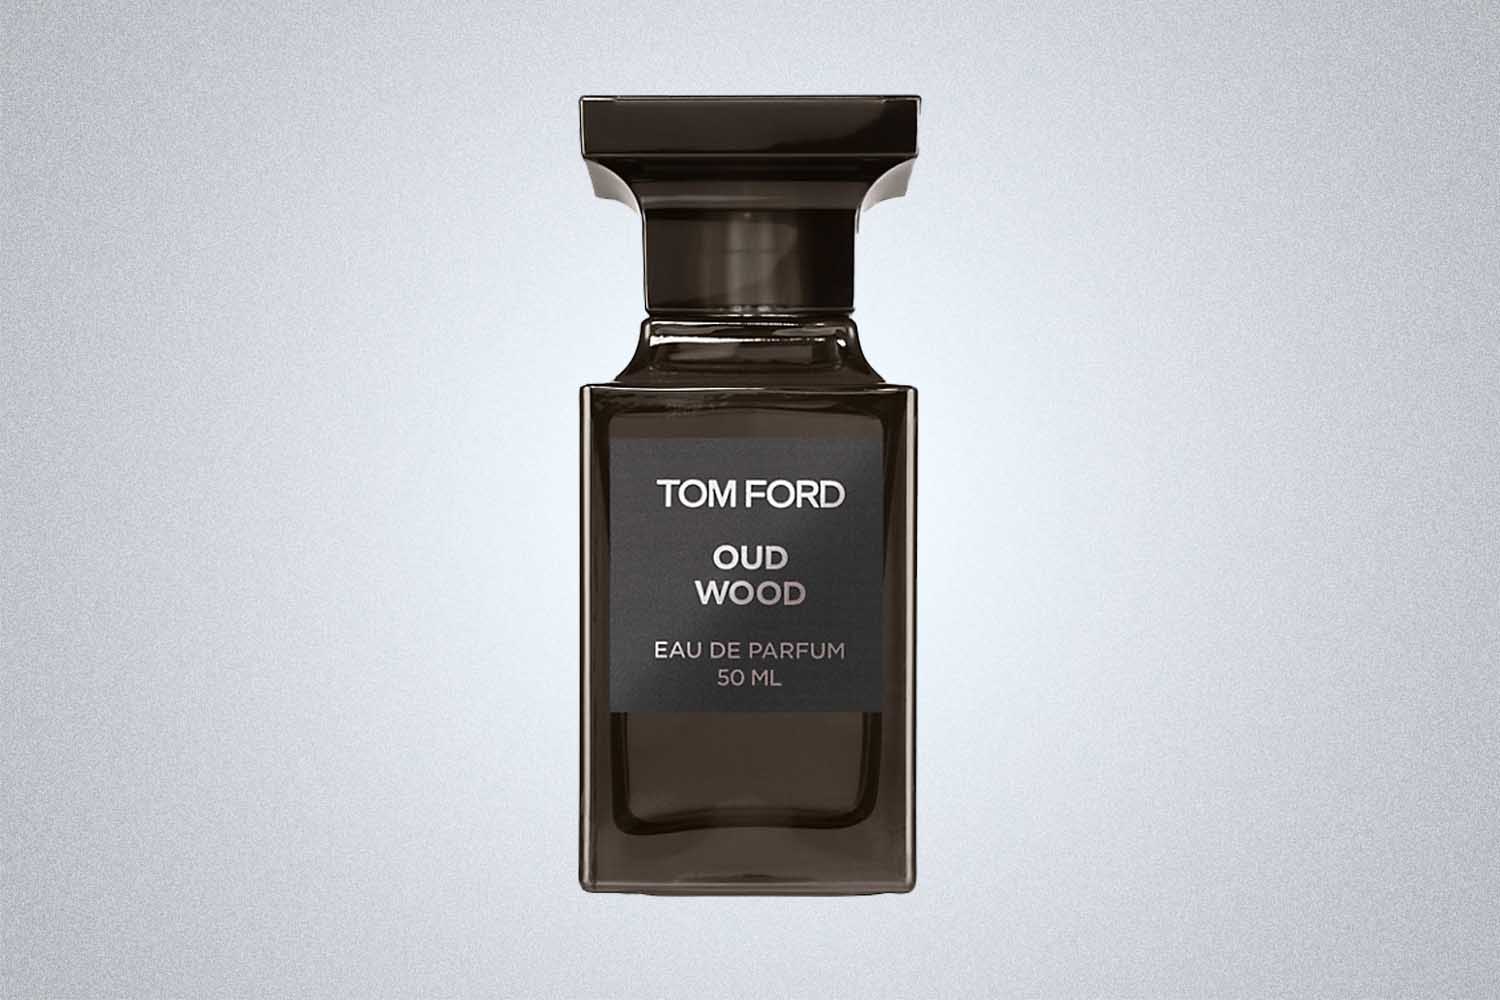 Tom Ford Oud Wood Eau de Parfum, now on sale